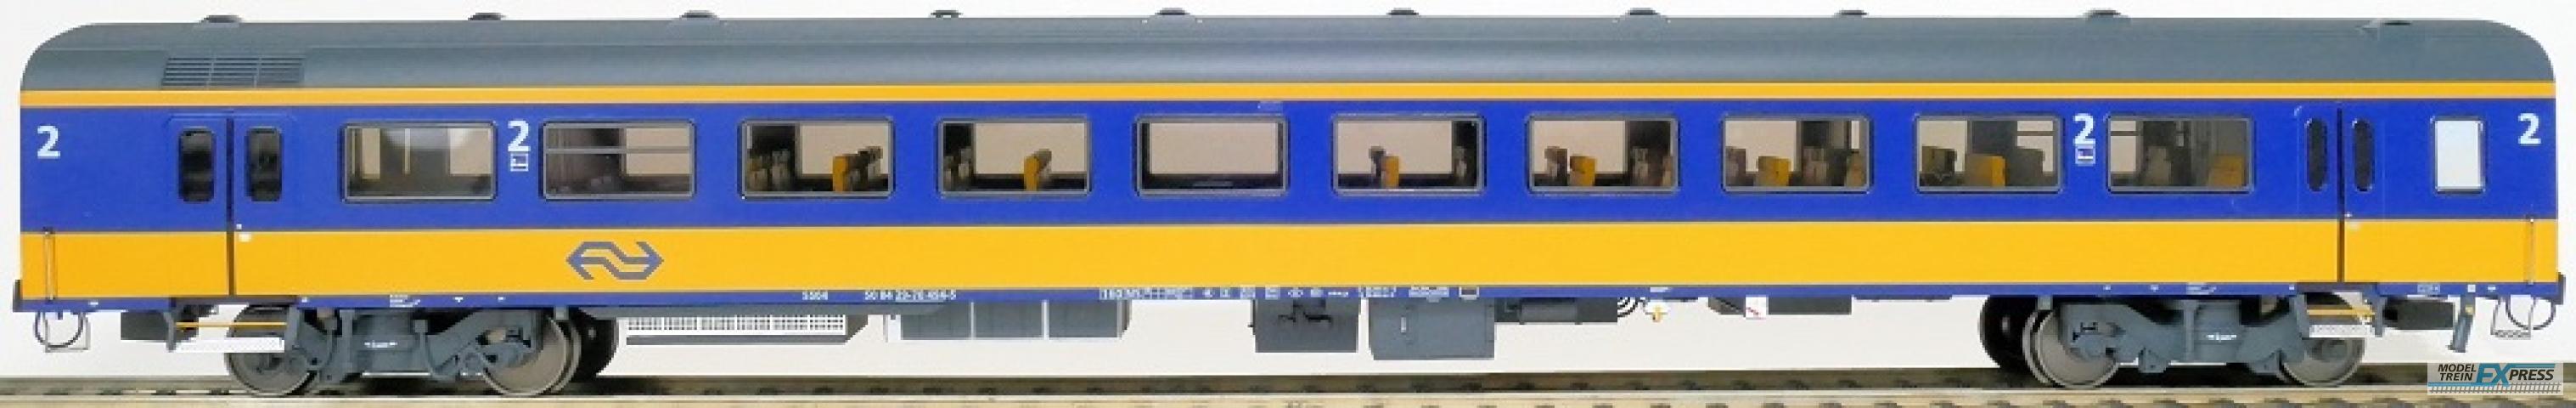 Exact-train 11177 NS ICRm Garnitur 4 Reisezugwagen Bf( Neue farbe Gelb / Blau) mit Beleuchtung und Figuren, Ep. V